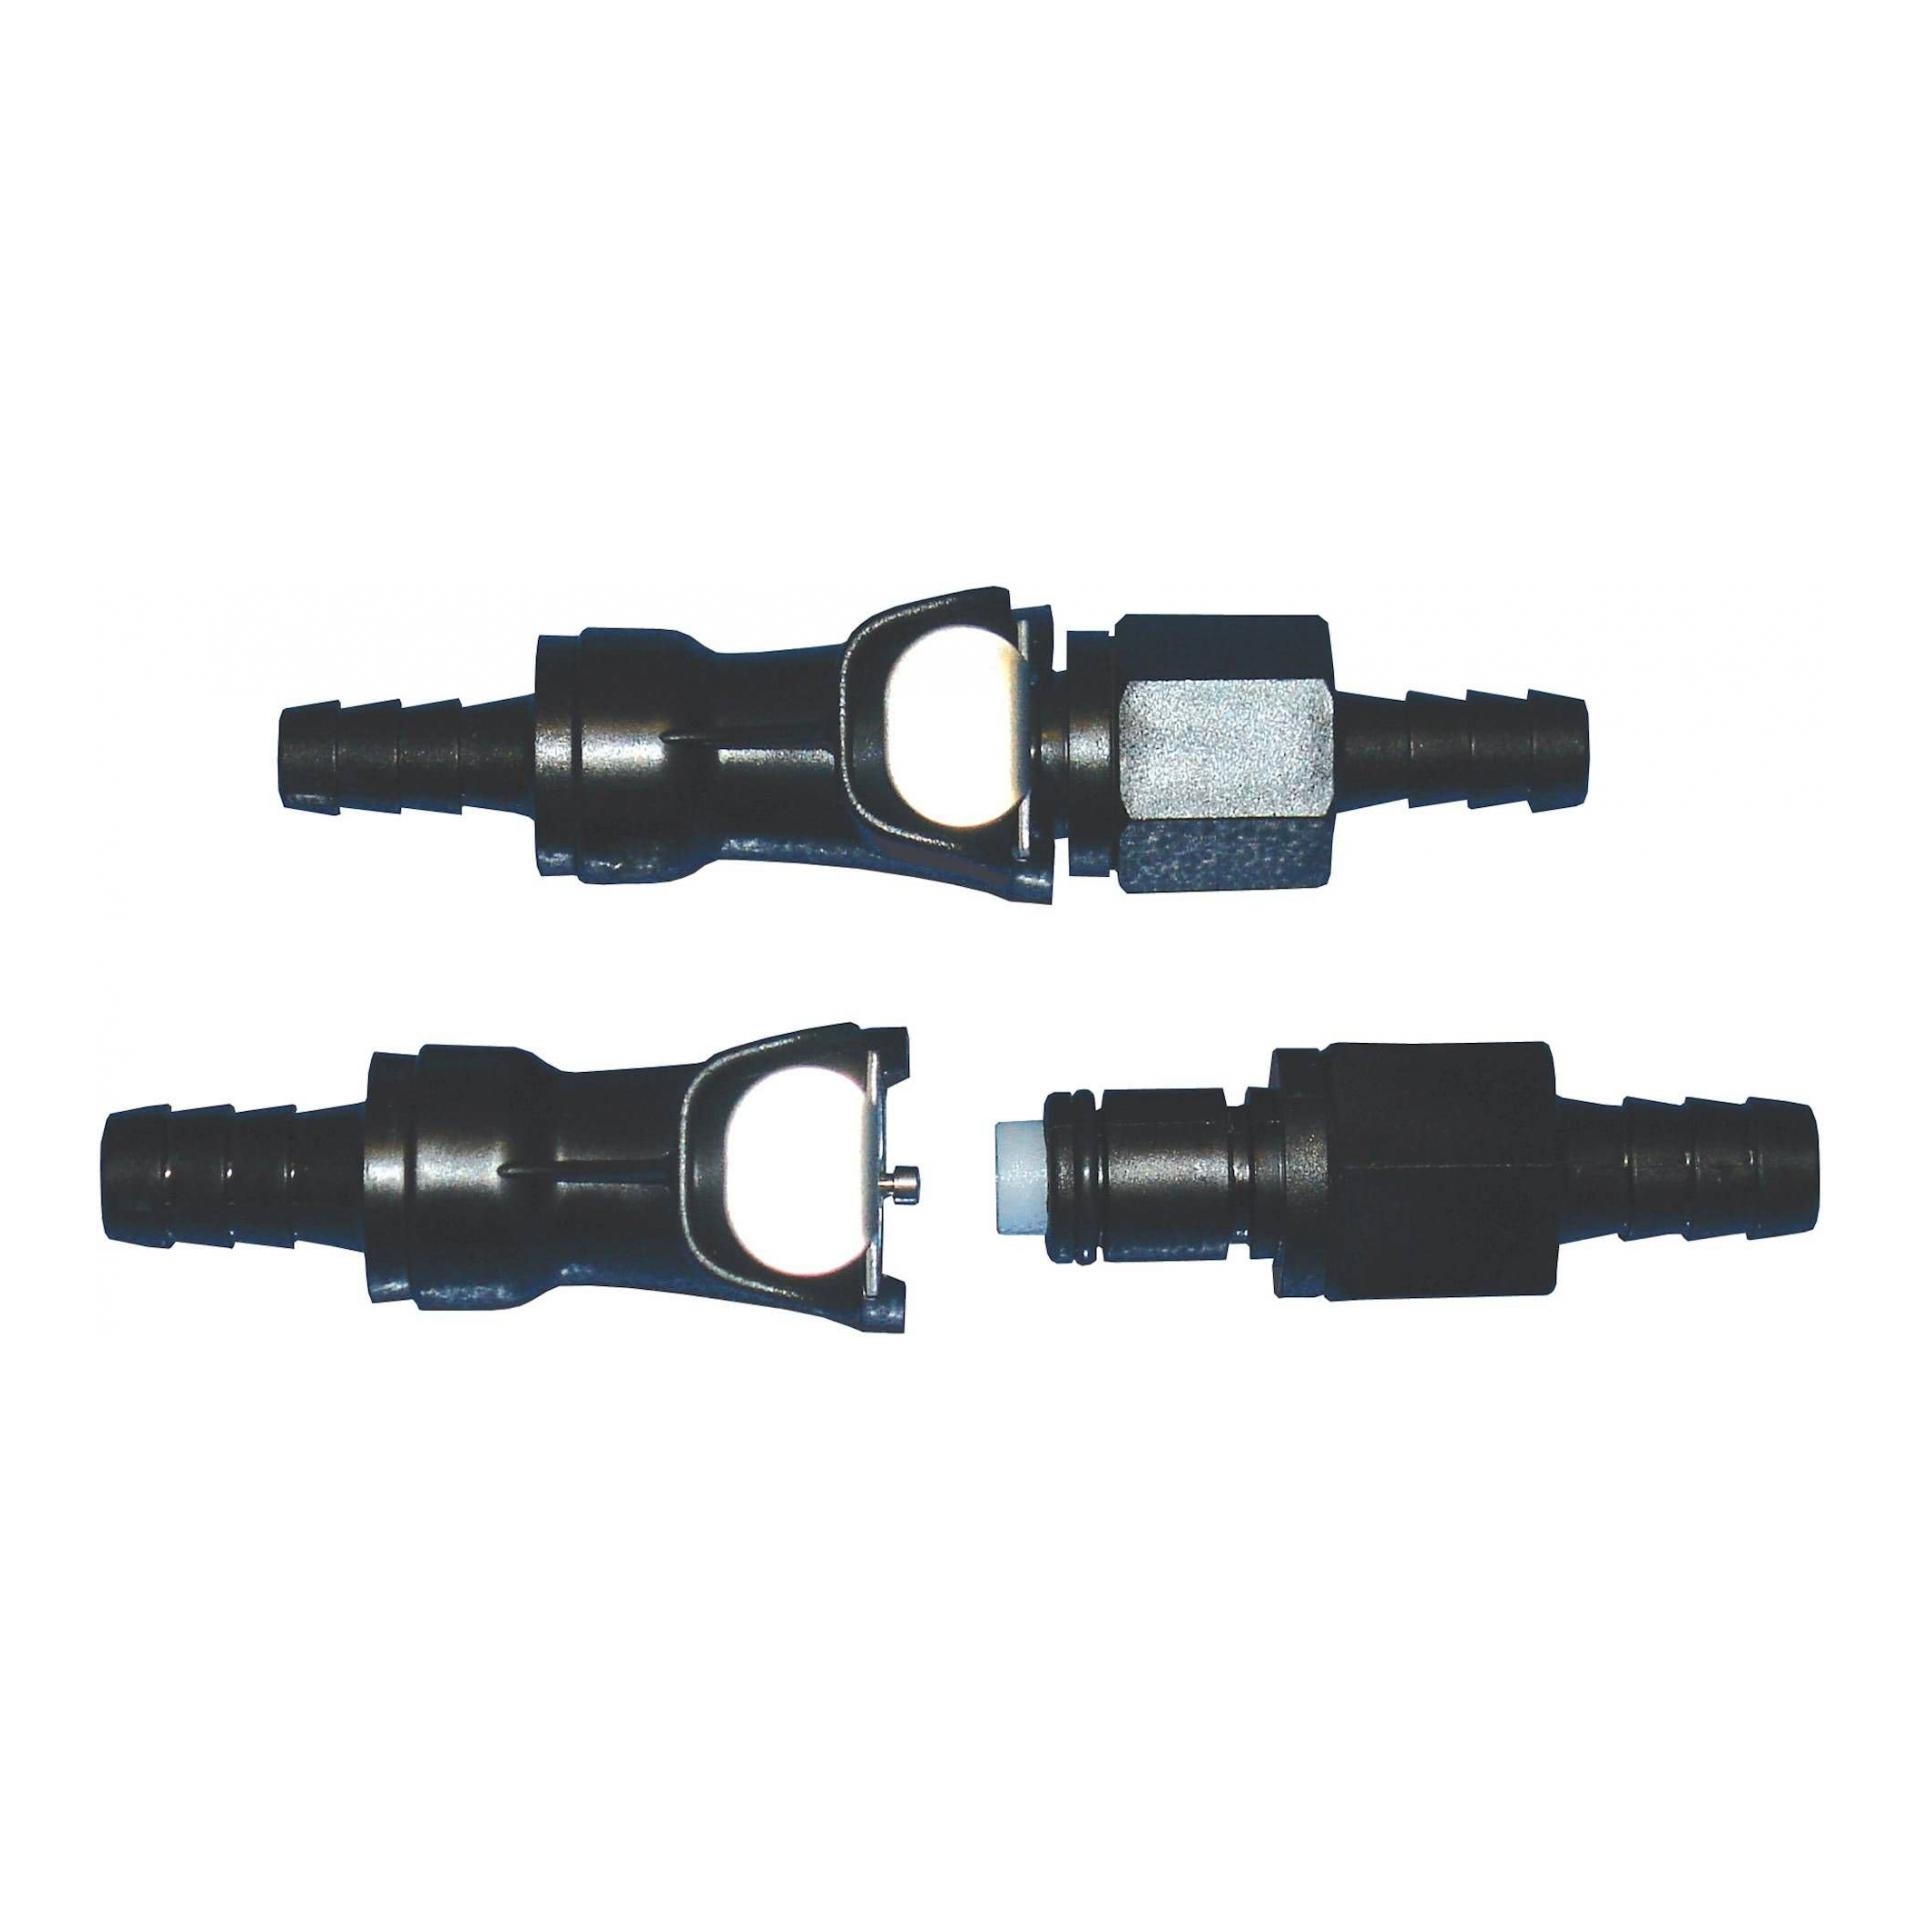 Raccord connecteur T pour tuyau et durite diamètre 8-8-6mm - SARL FLEXEO